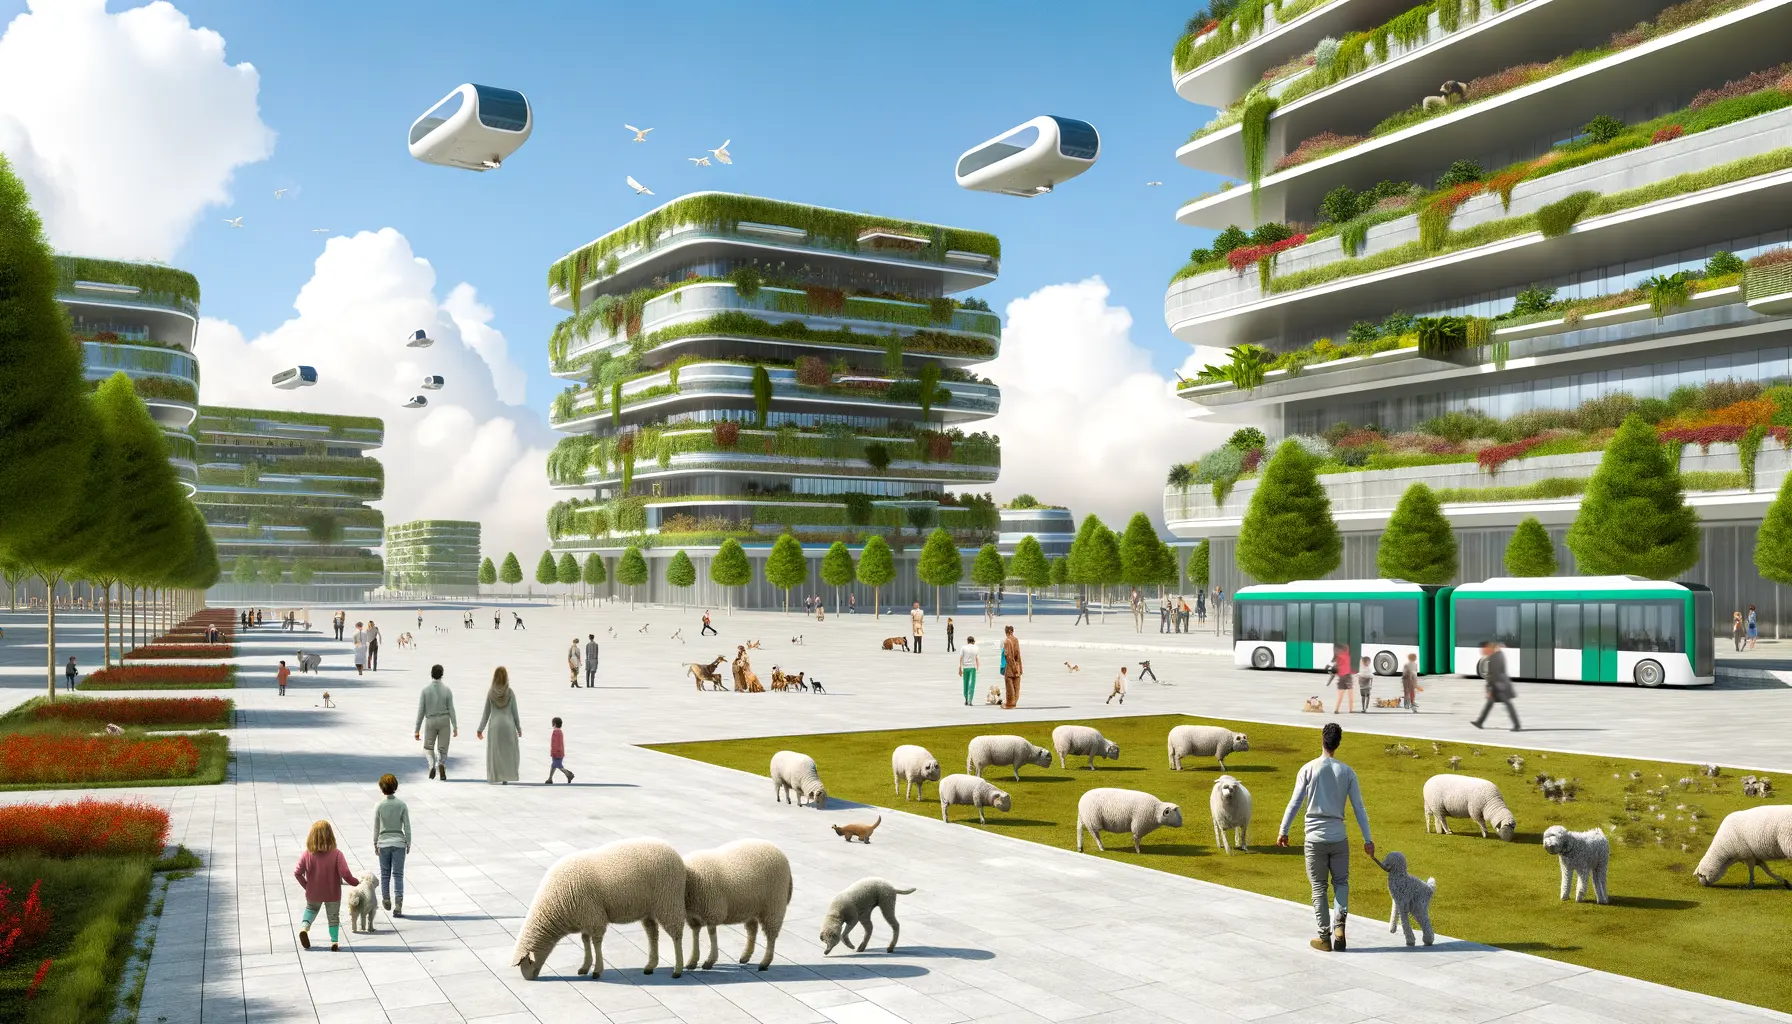 Futuristische Stadtszene, die Harmonie zwischen Natur und moderner Architektur zeigt